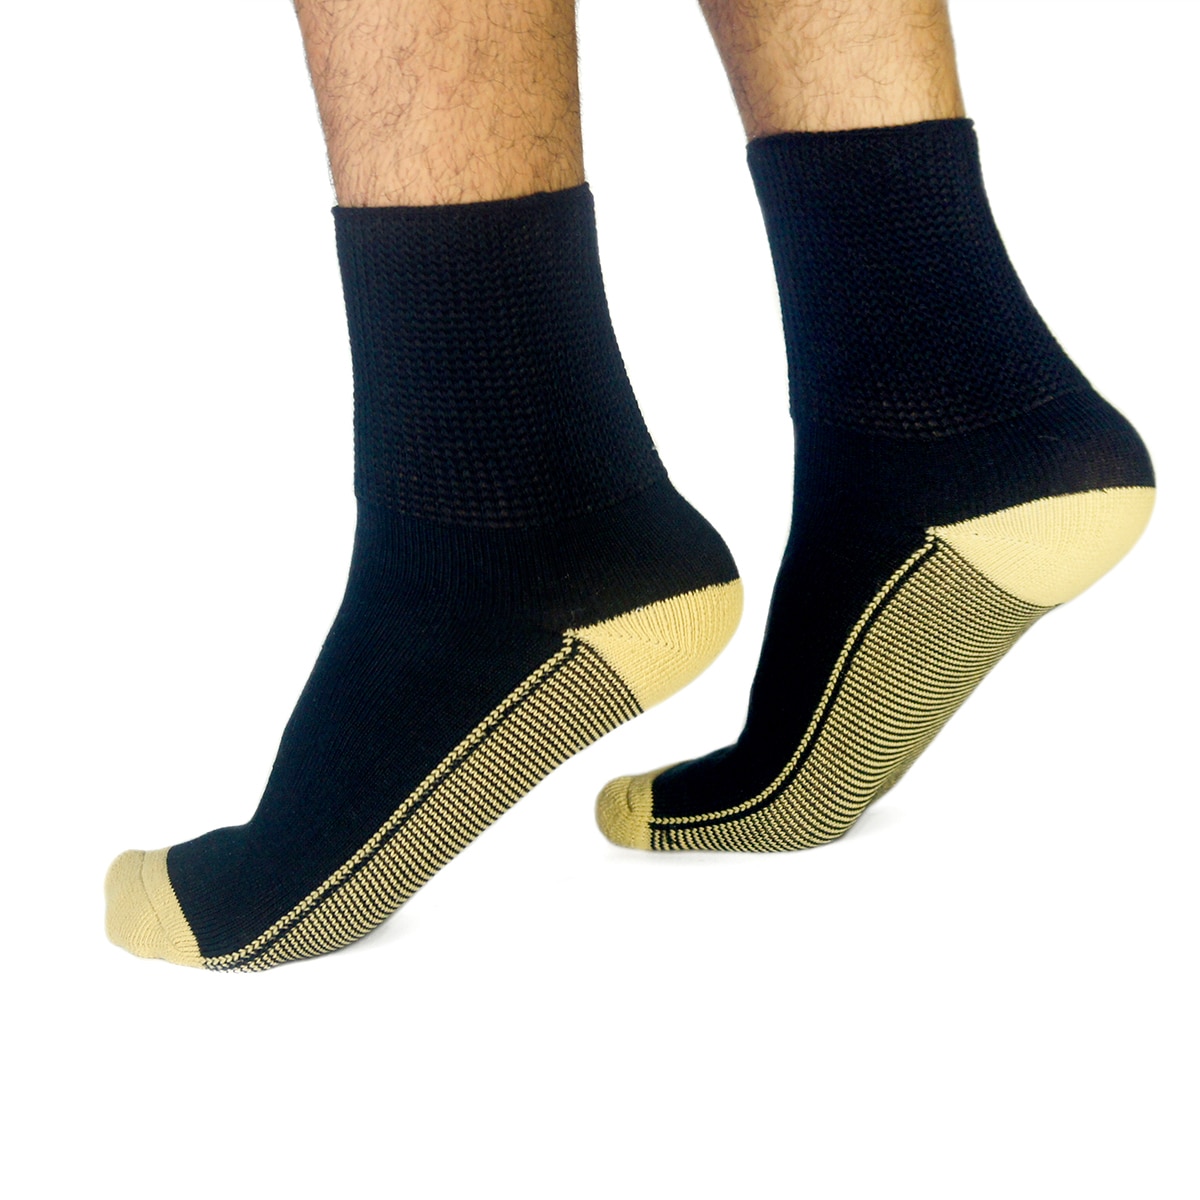 Copper Socks, Calcetines Cortos para Diabéticos (3 Pares) Color Negro Talla Chica